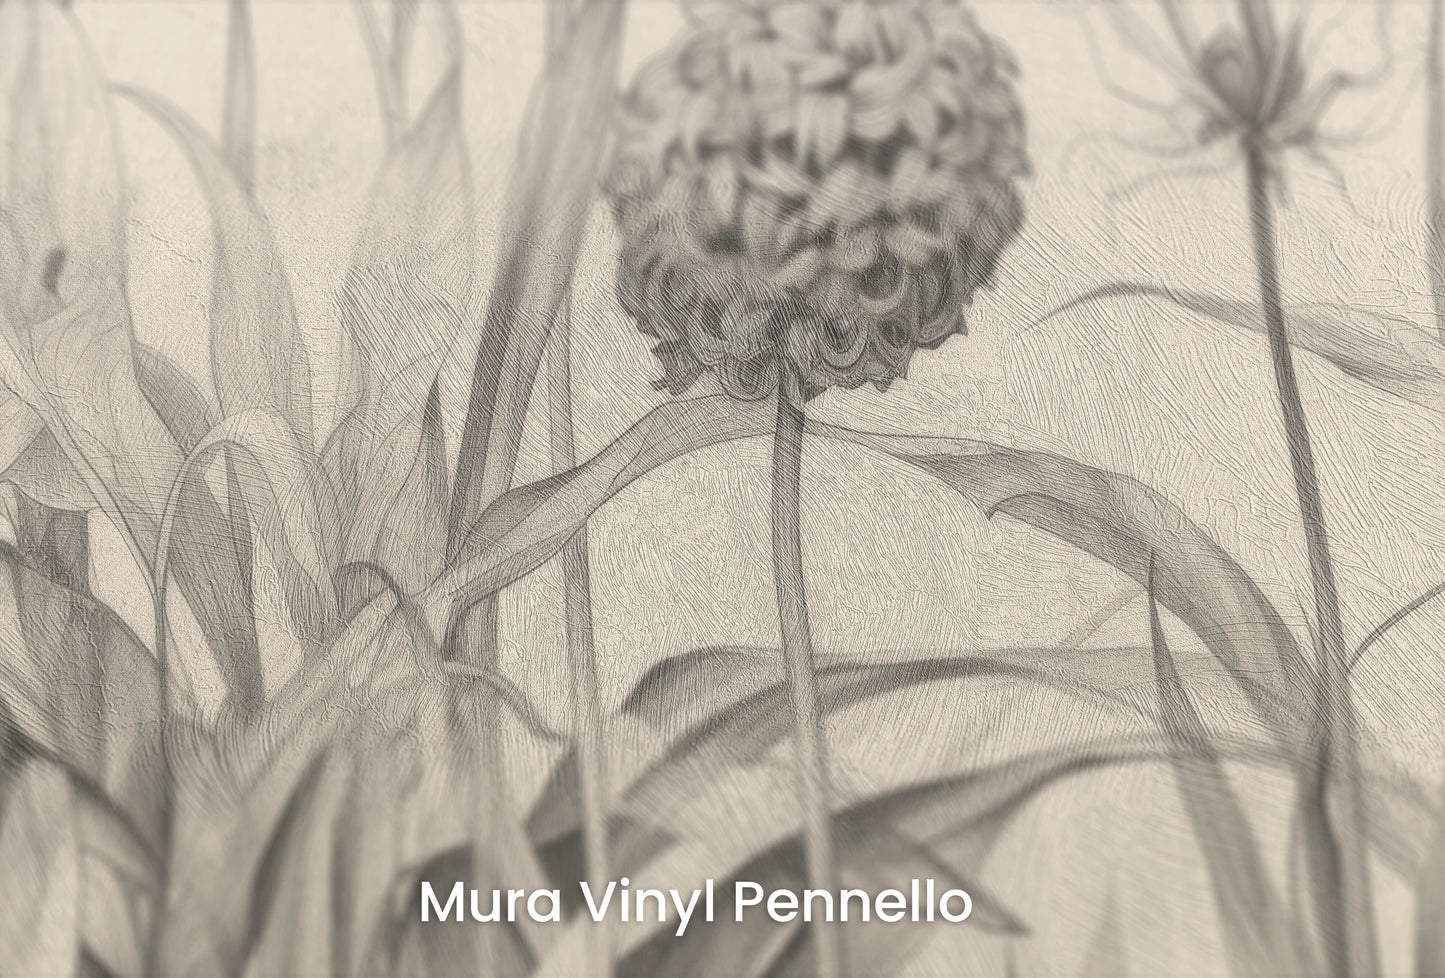 Zbliżenie na artystyczną fototapetę o nazwie Garden Sketches na podłożu Mura Vinyl Pennello - faktura pociągnięć pędzla malarskiego.